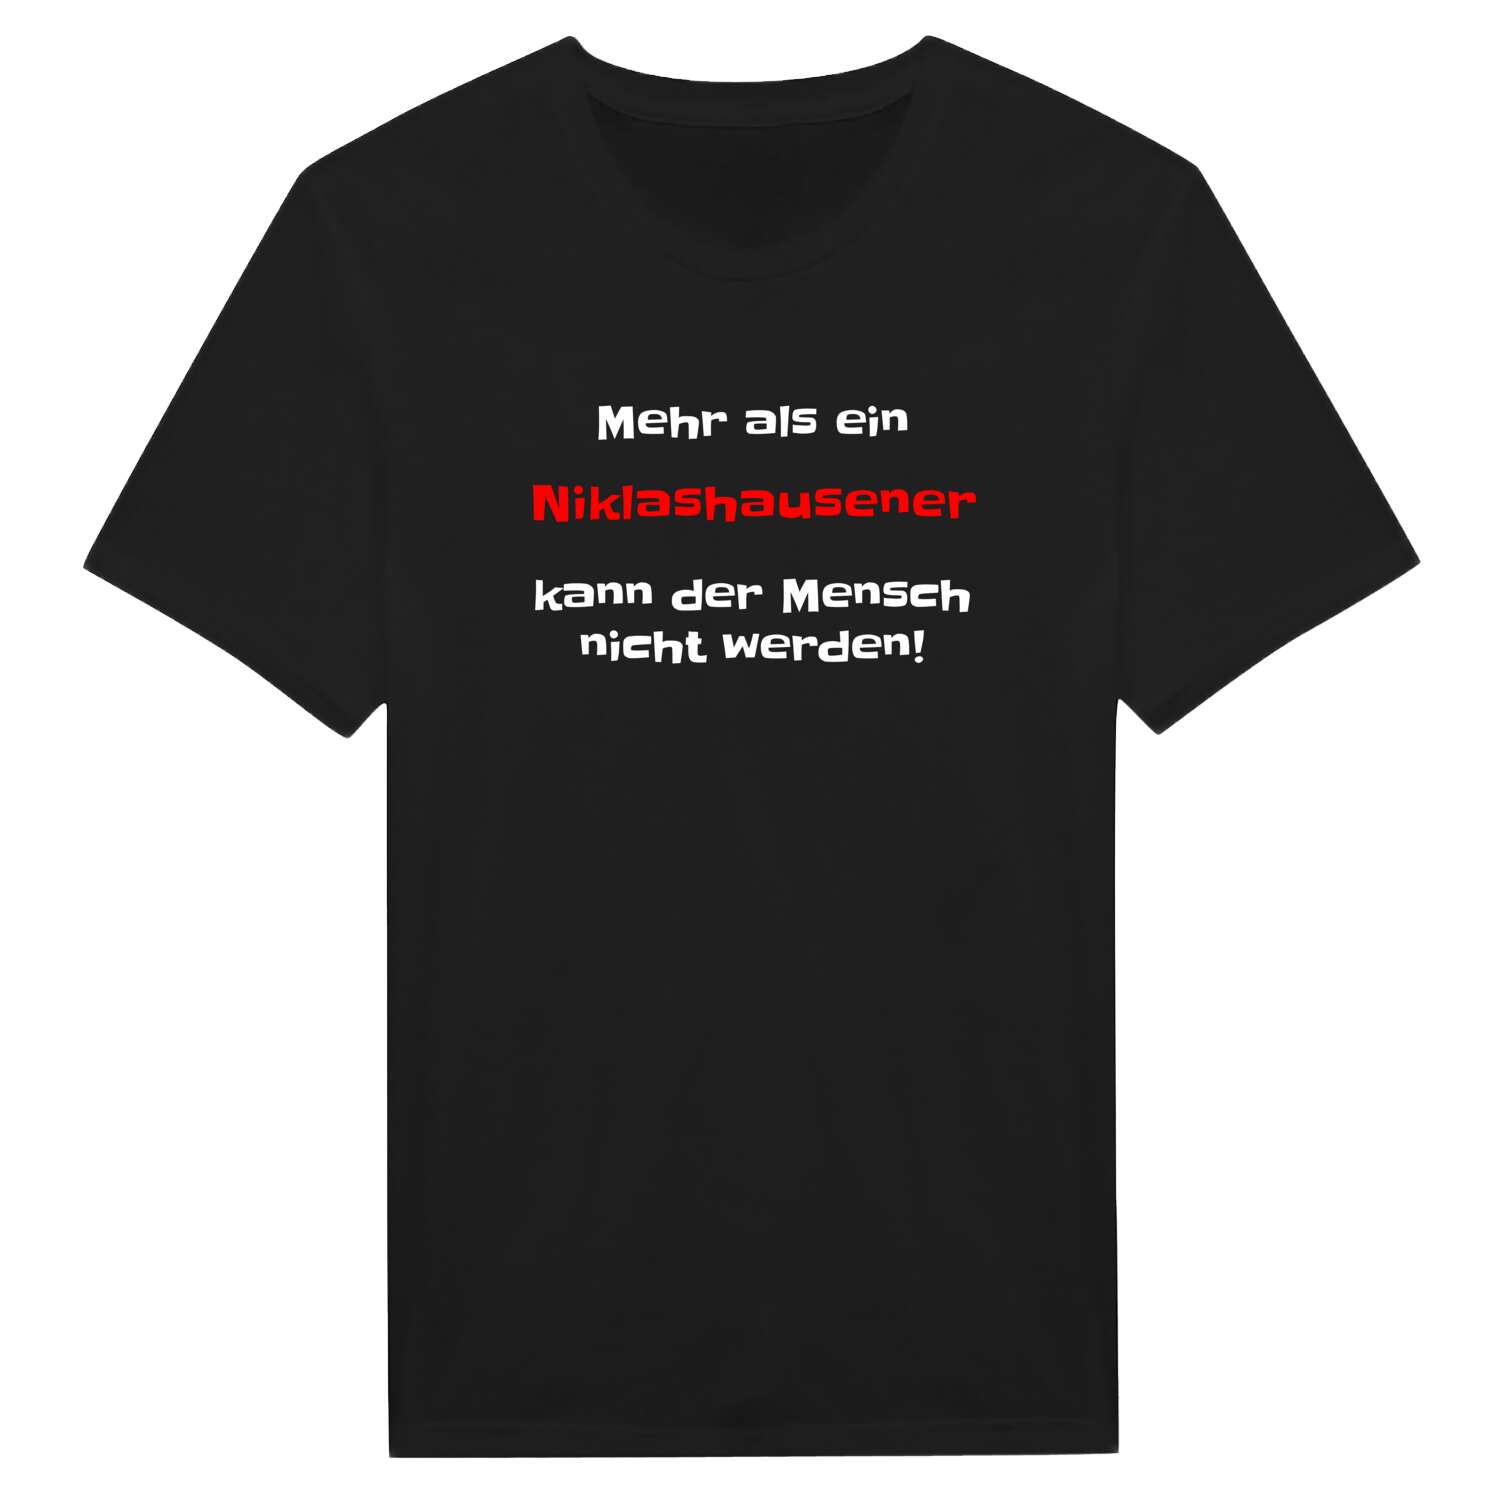 Niklashausen T-Shirt »Mehr als ein«